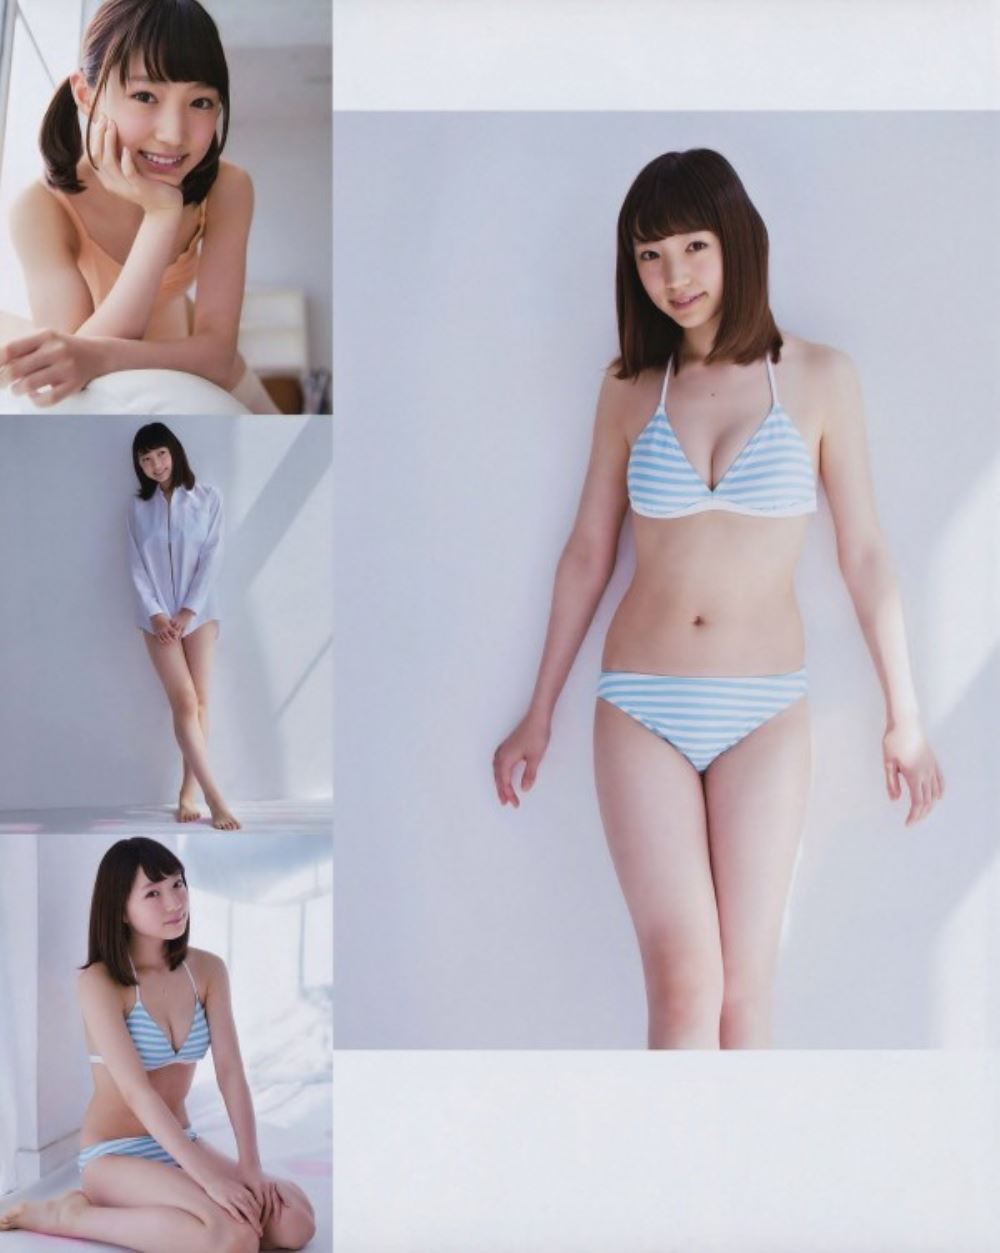 太田夢莉 1万年に1人 可愛い アイドル 水着 画像 17